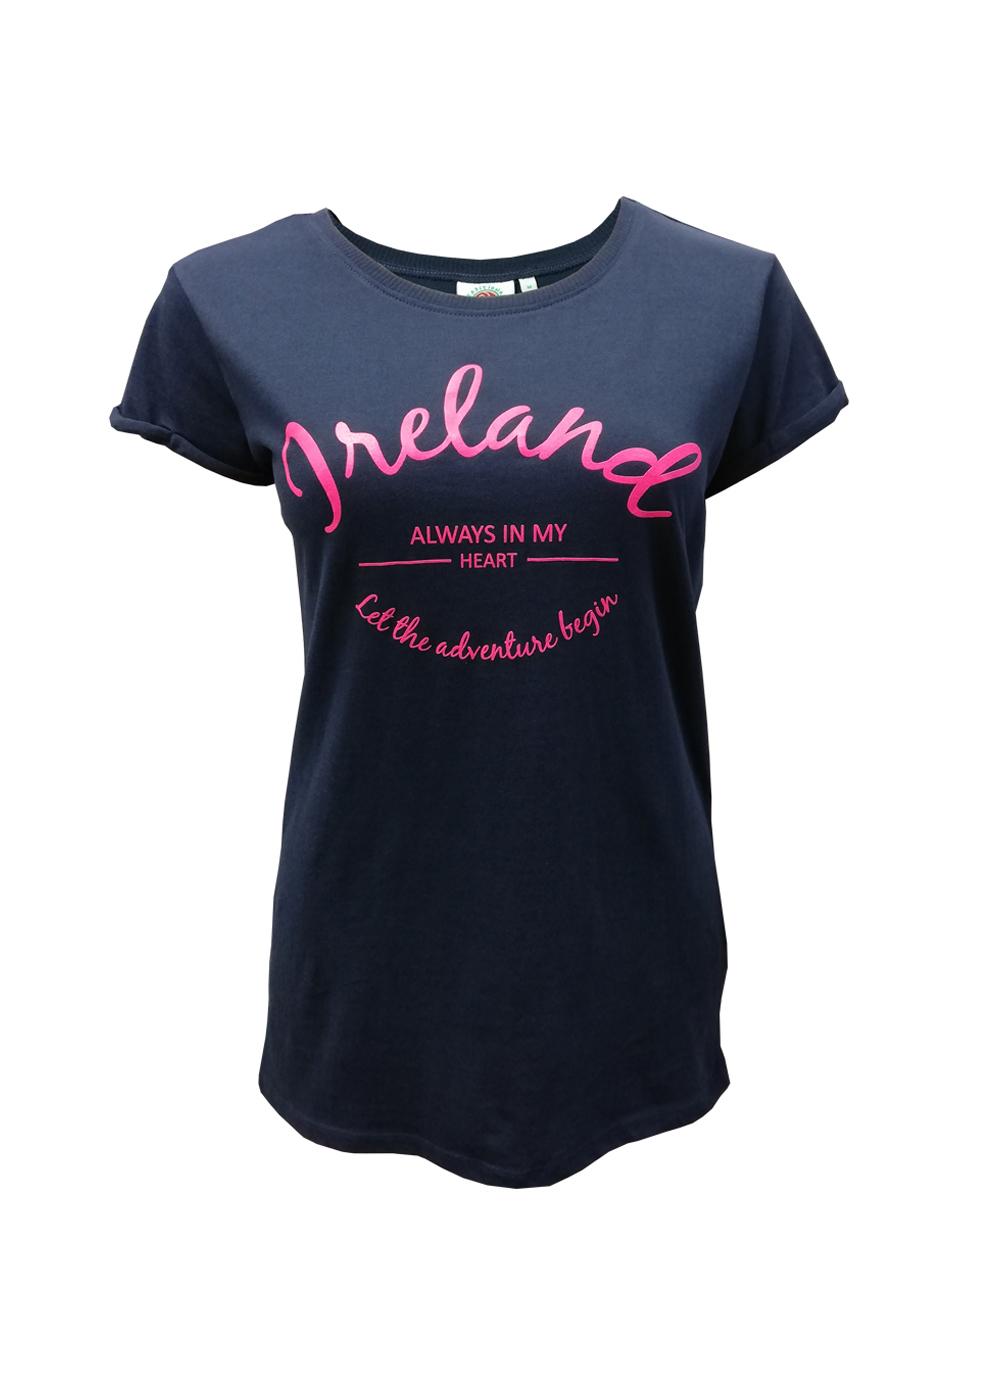 Ireland Neon V-Neck T-Shirt | Blarney